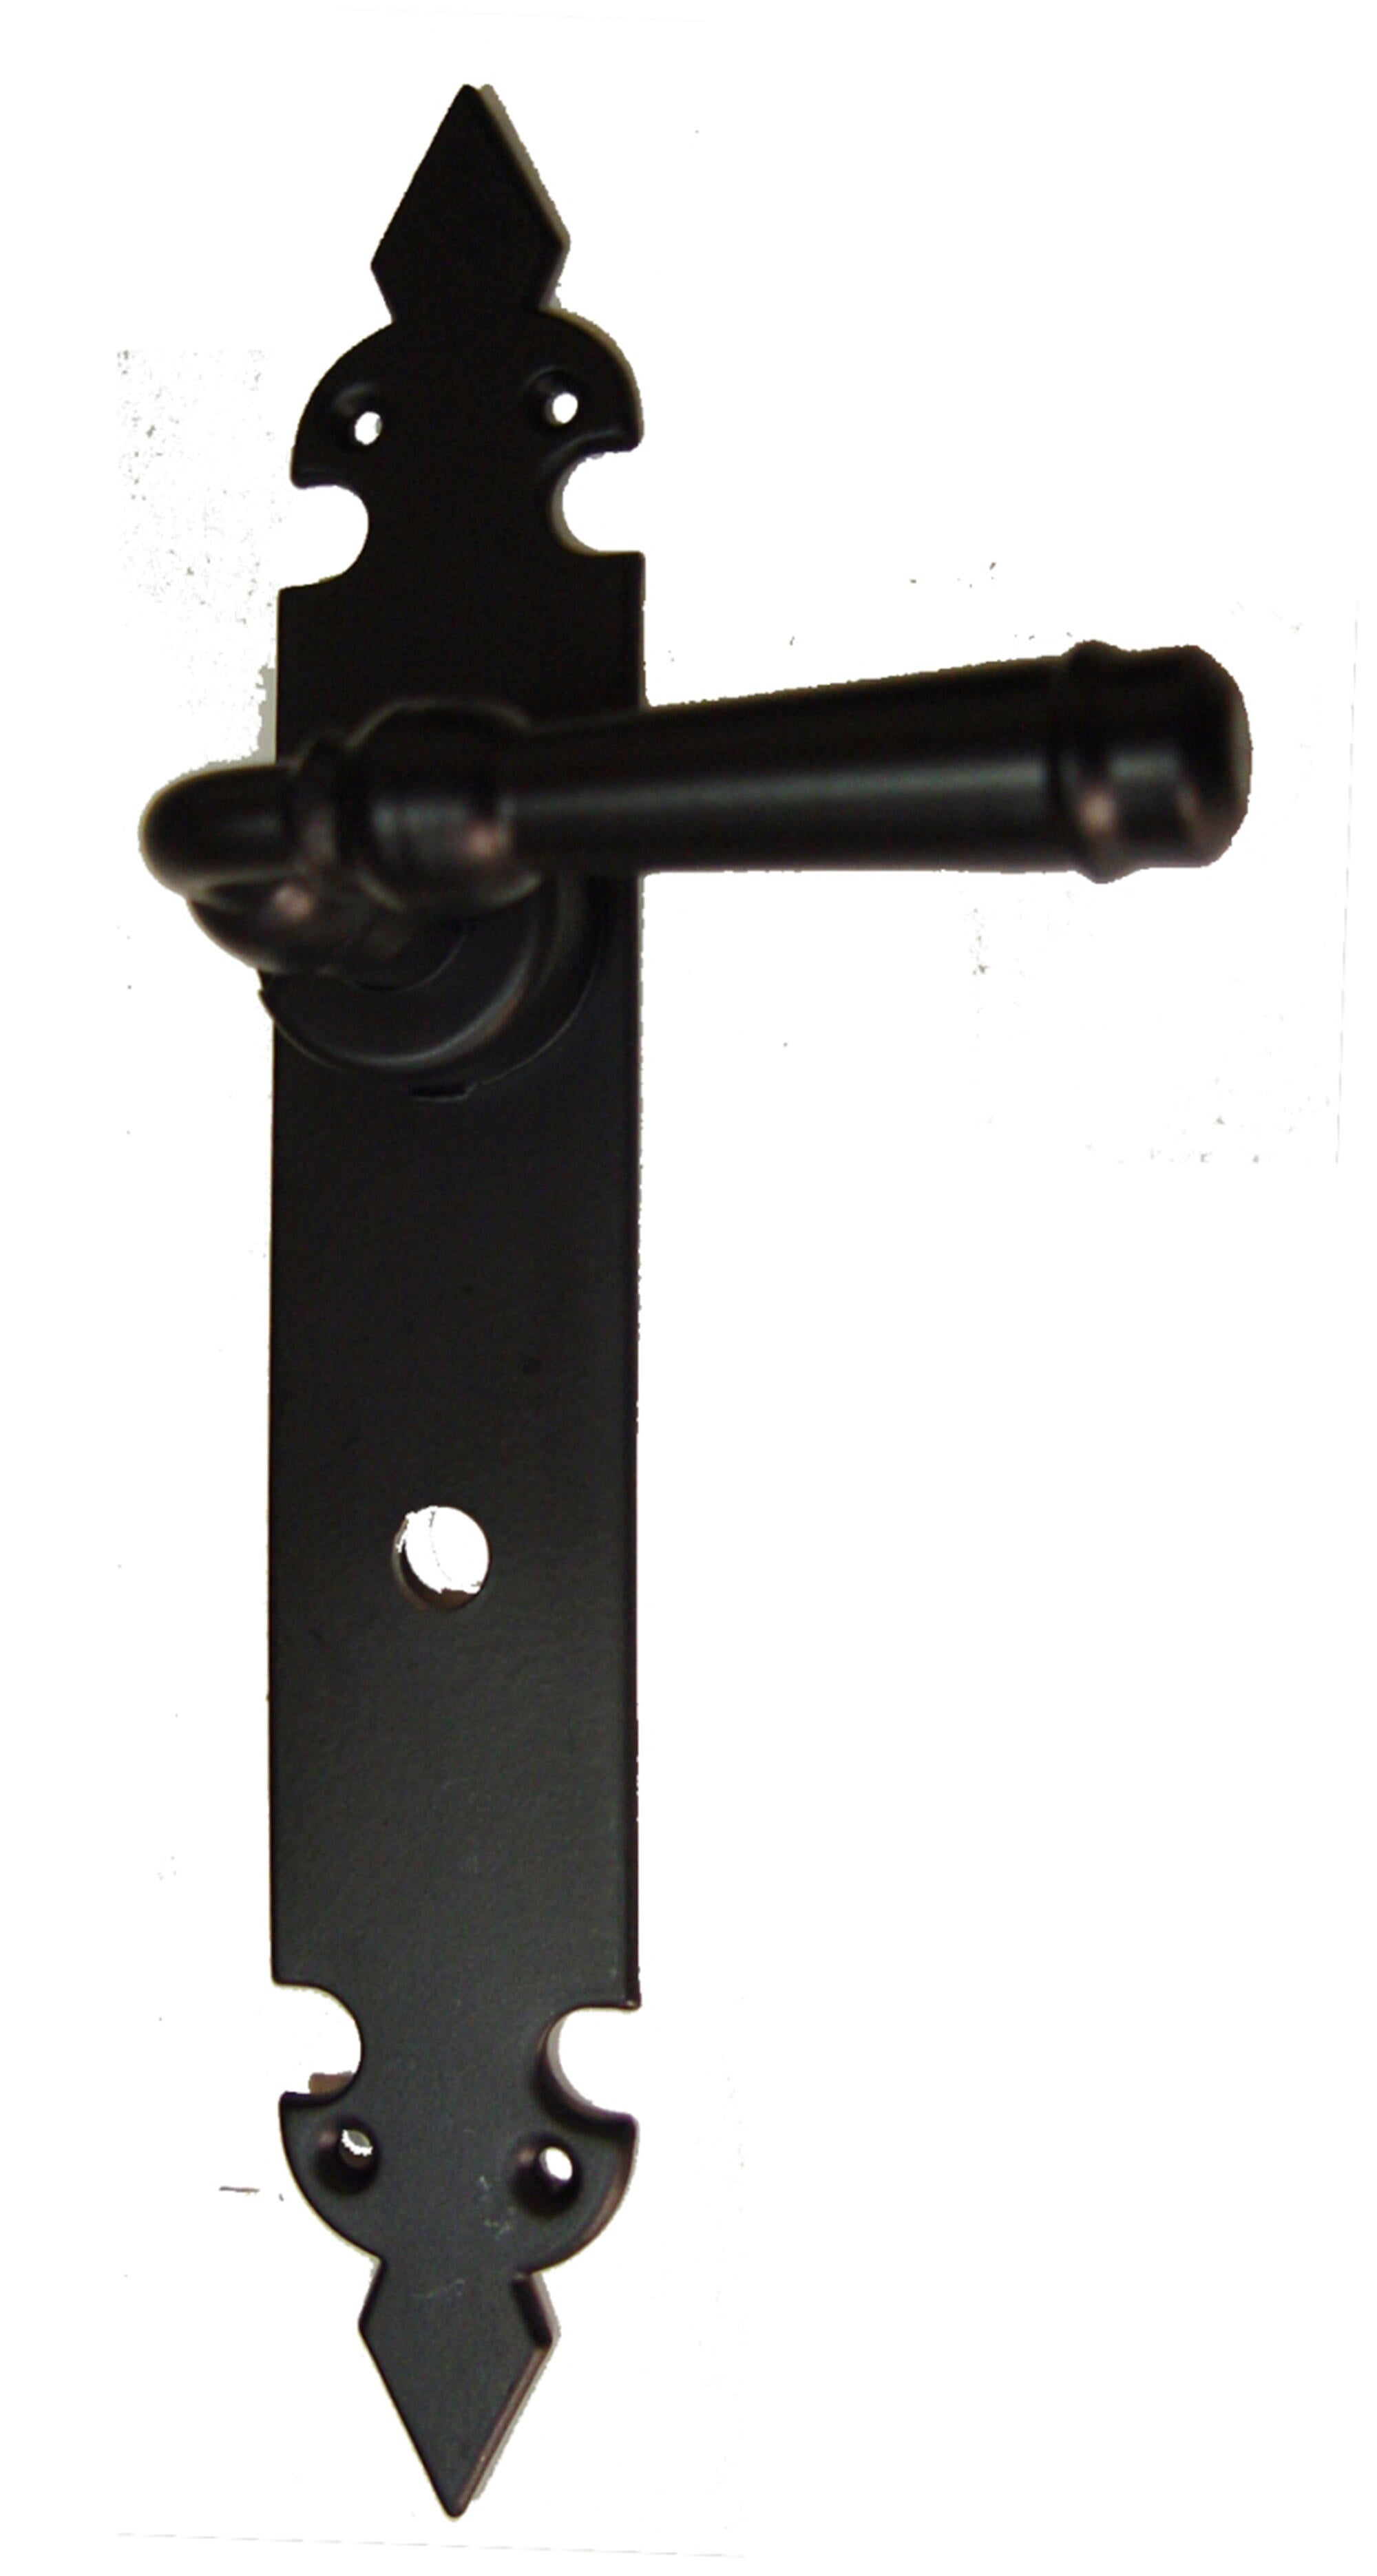 Manilla de placa de puerta bl-73173-c70 de hierro epoxi